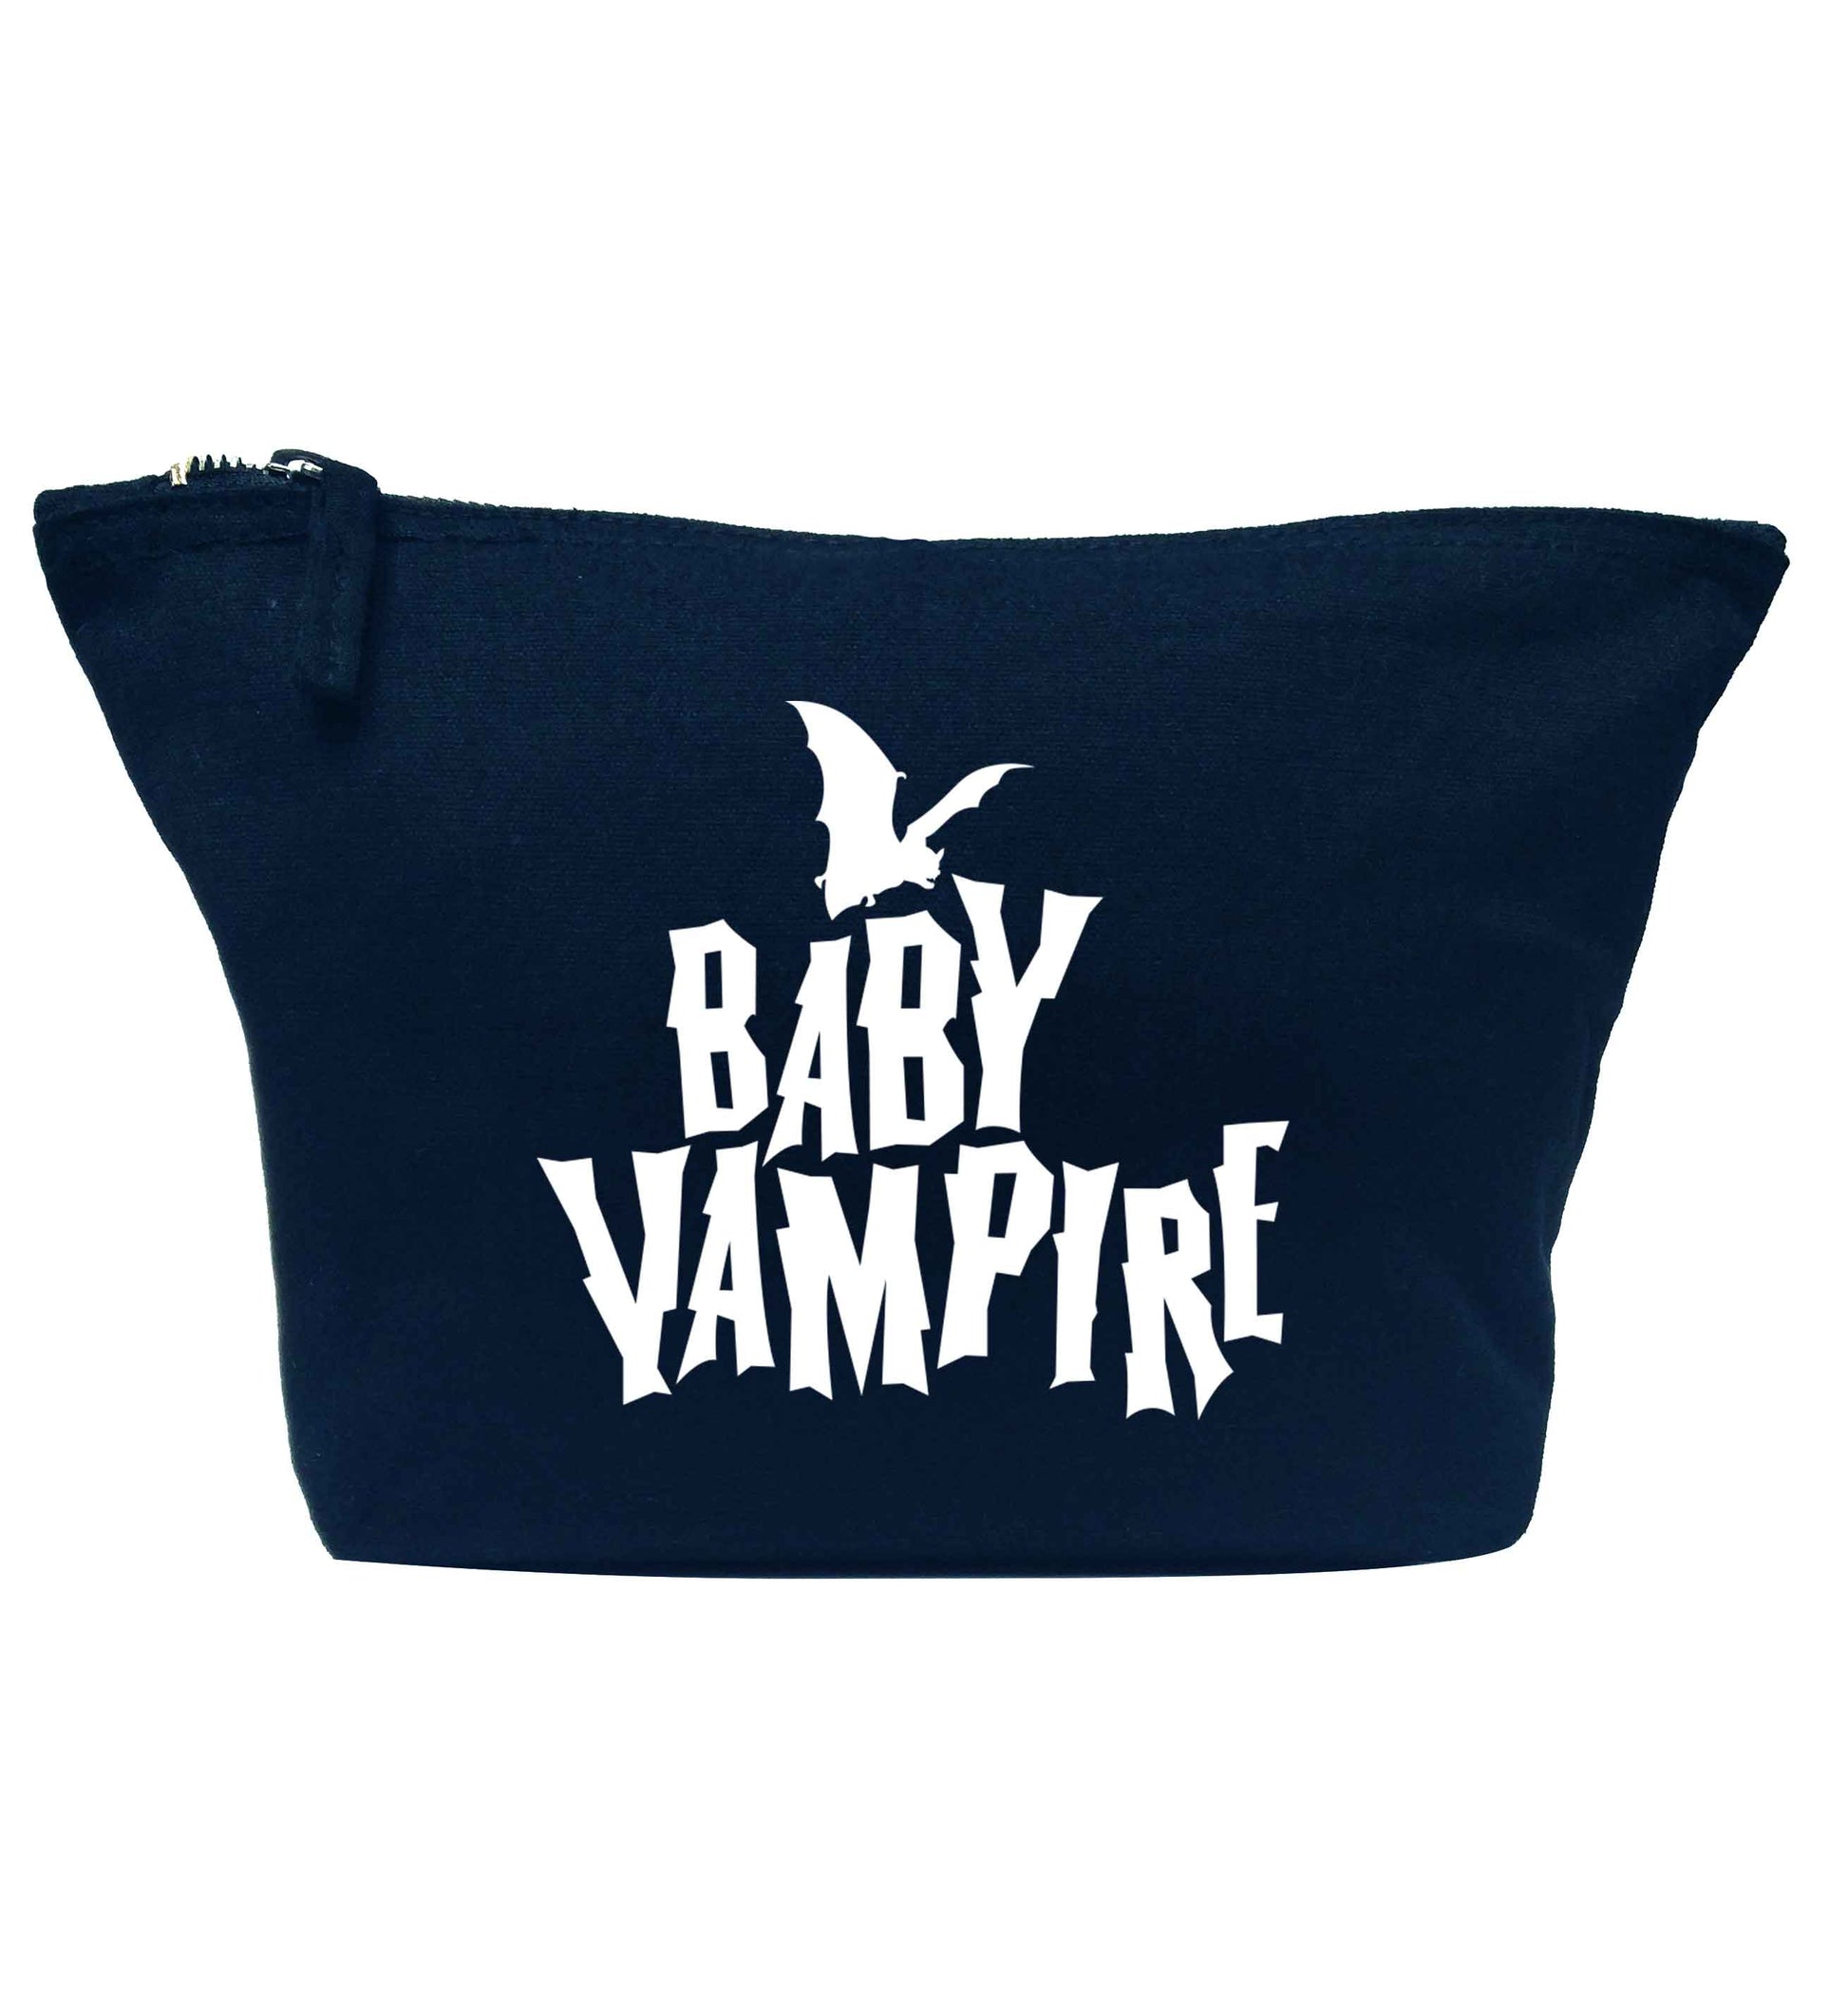 Baby vampire navy makeup bag